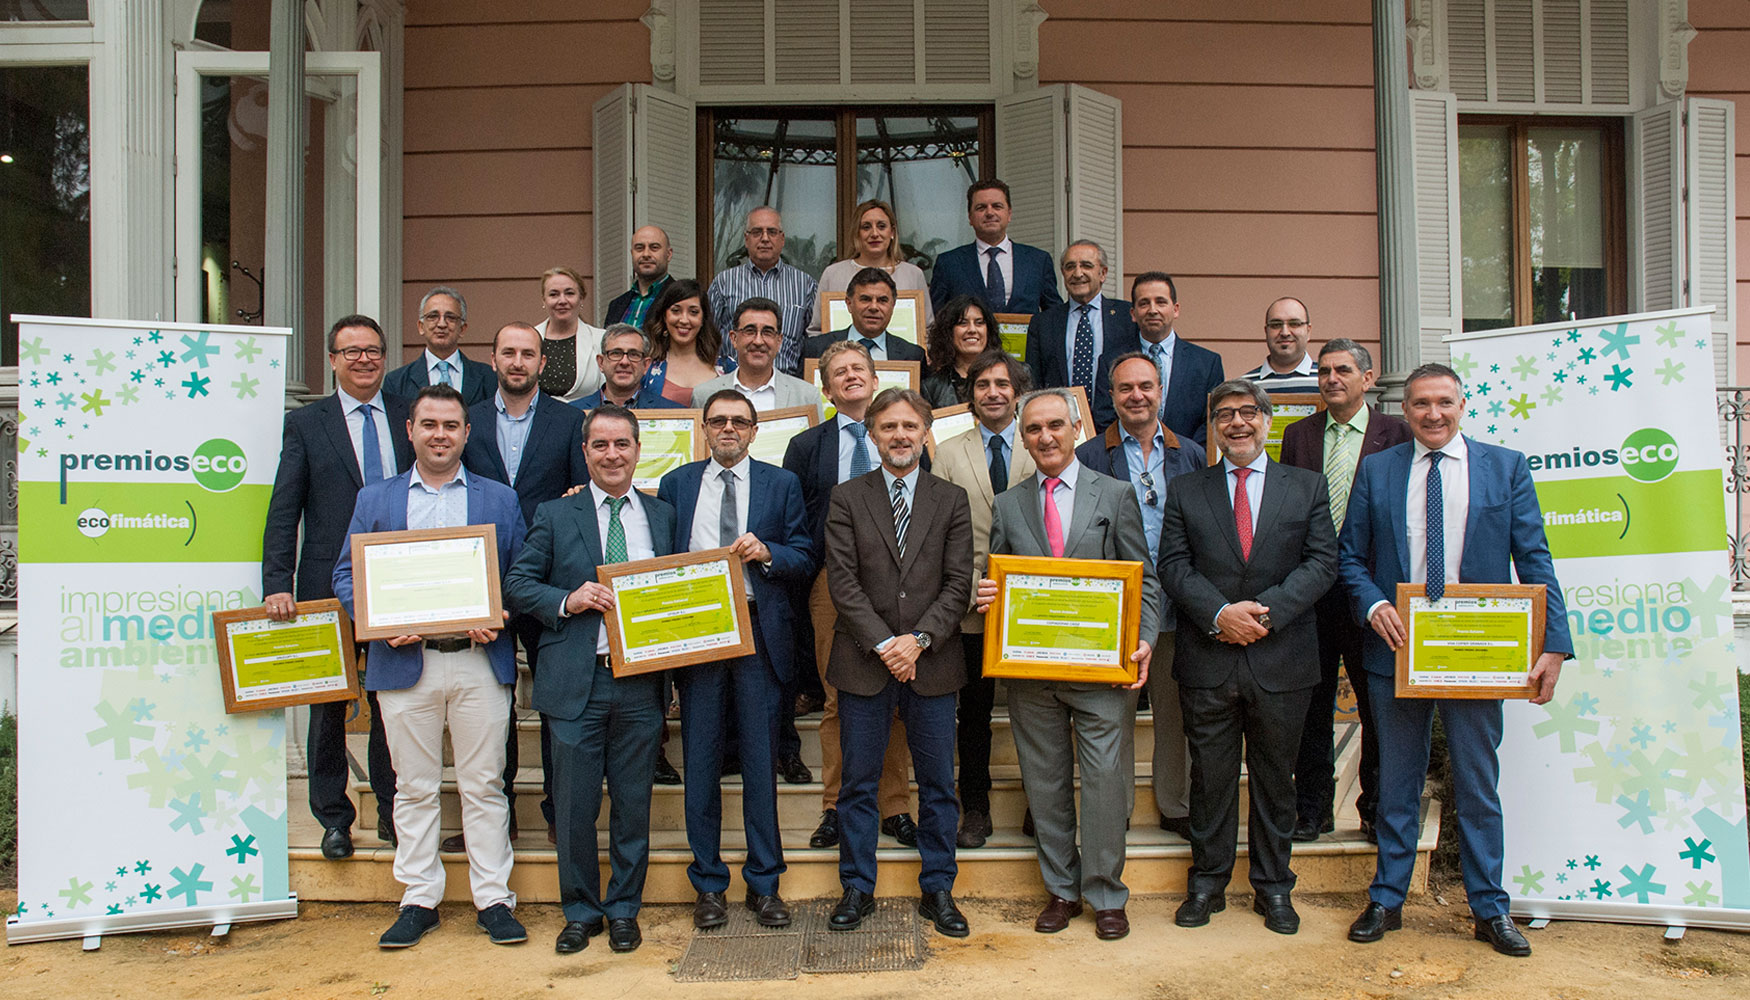 Familia de premiados en los I Premios ECO Andaluca